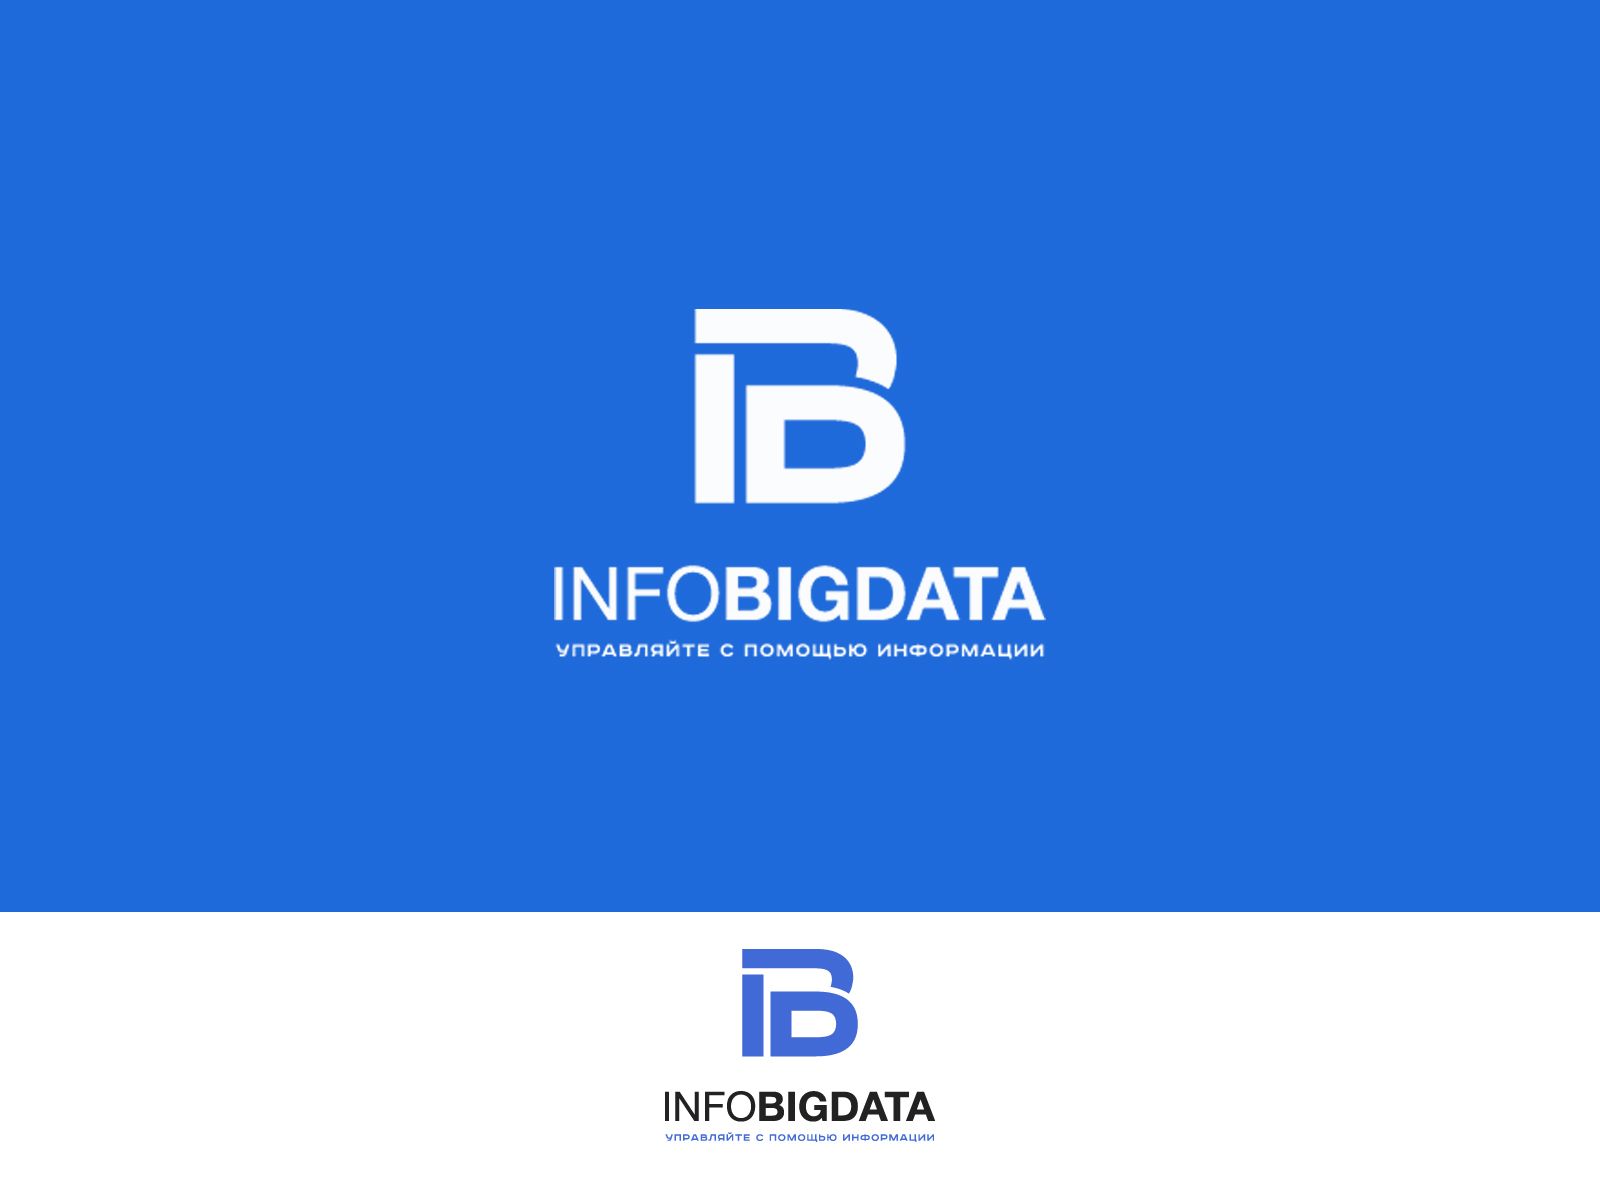 Логотип для infobigdata.ru - дизайнер U4po4mak